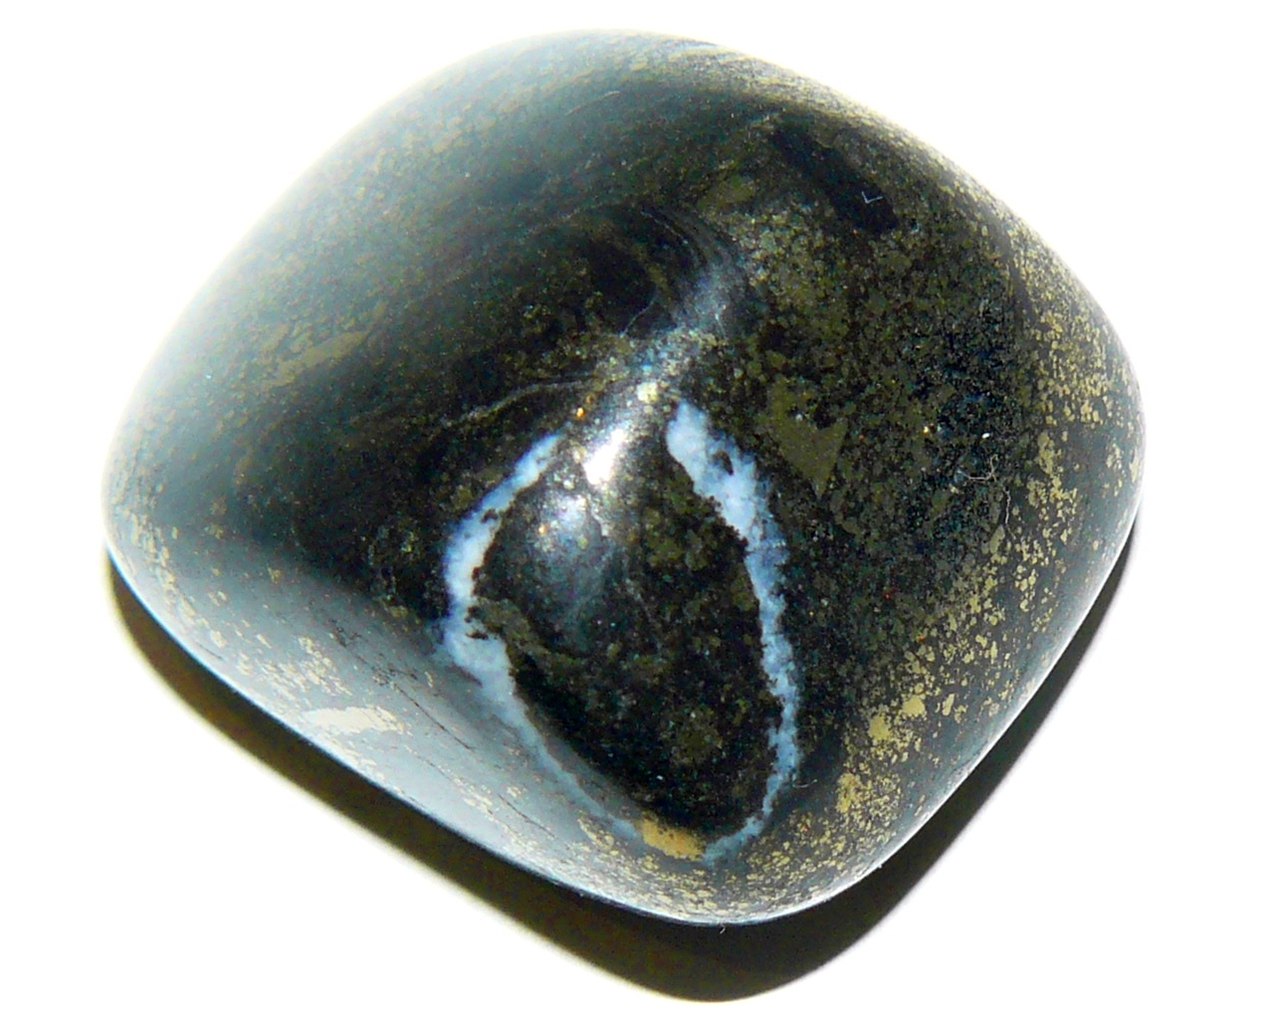 Энергия камней № 98 Пирит (окатанный камень) фото, обсуждение